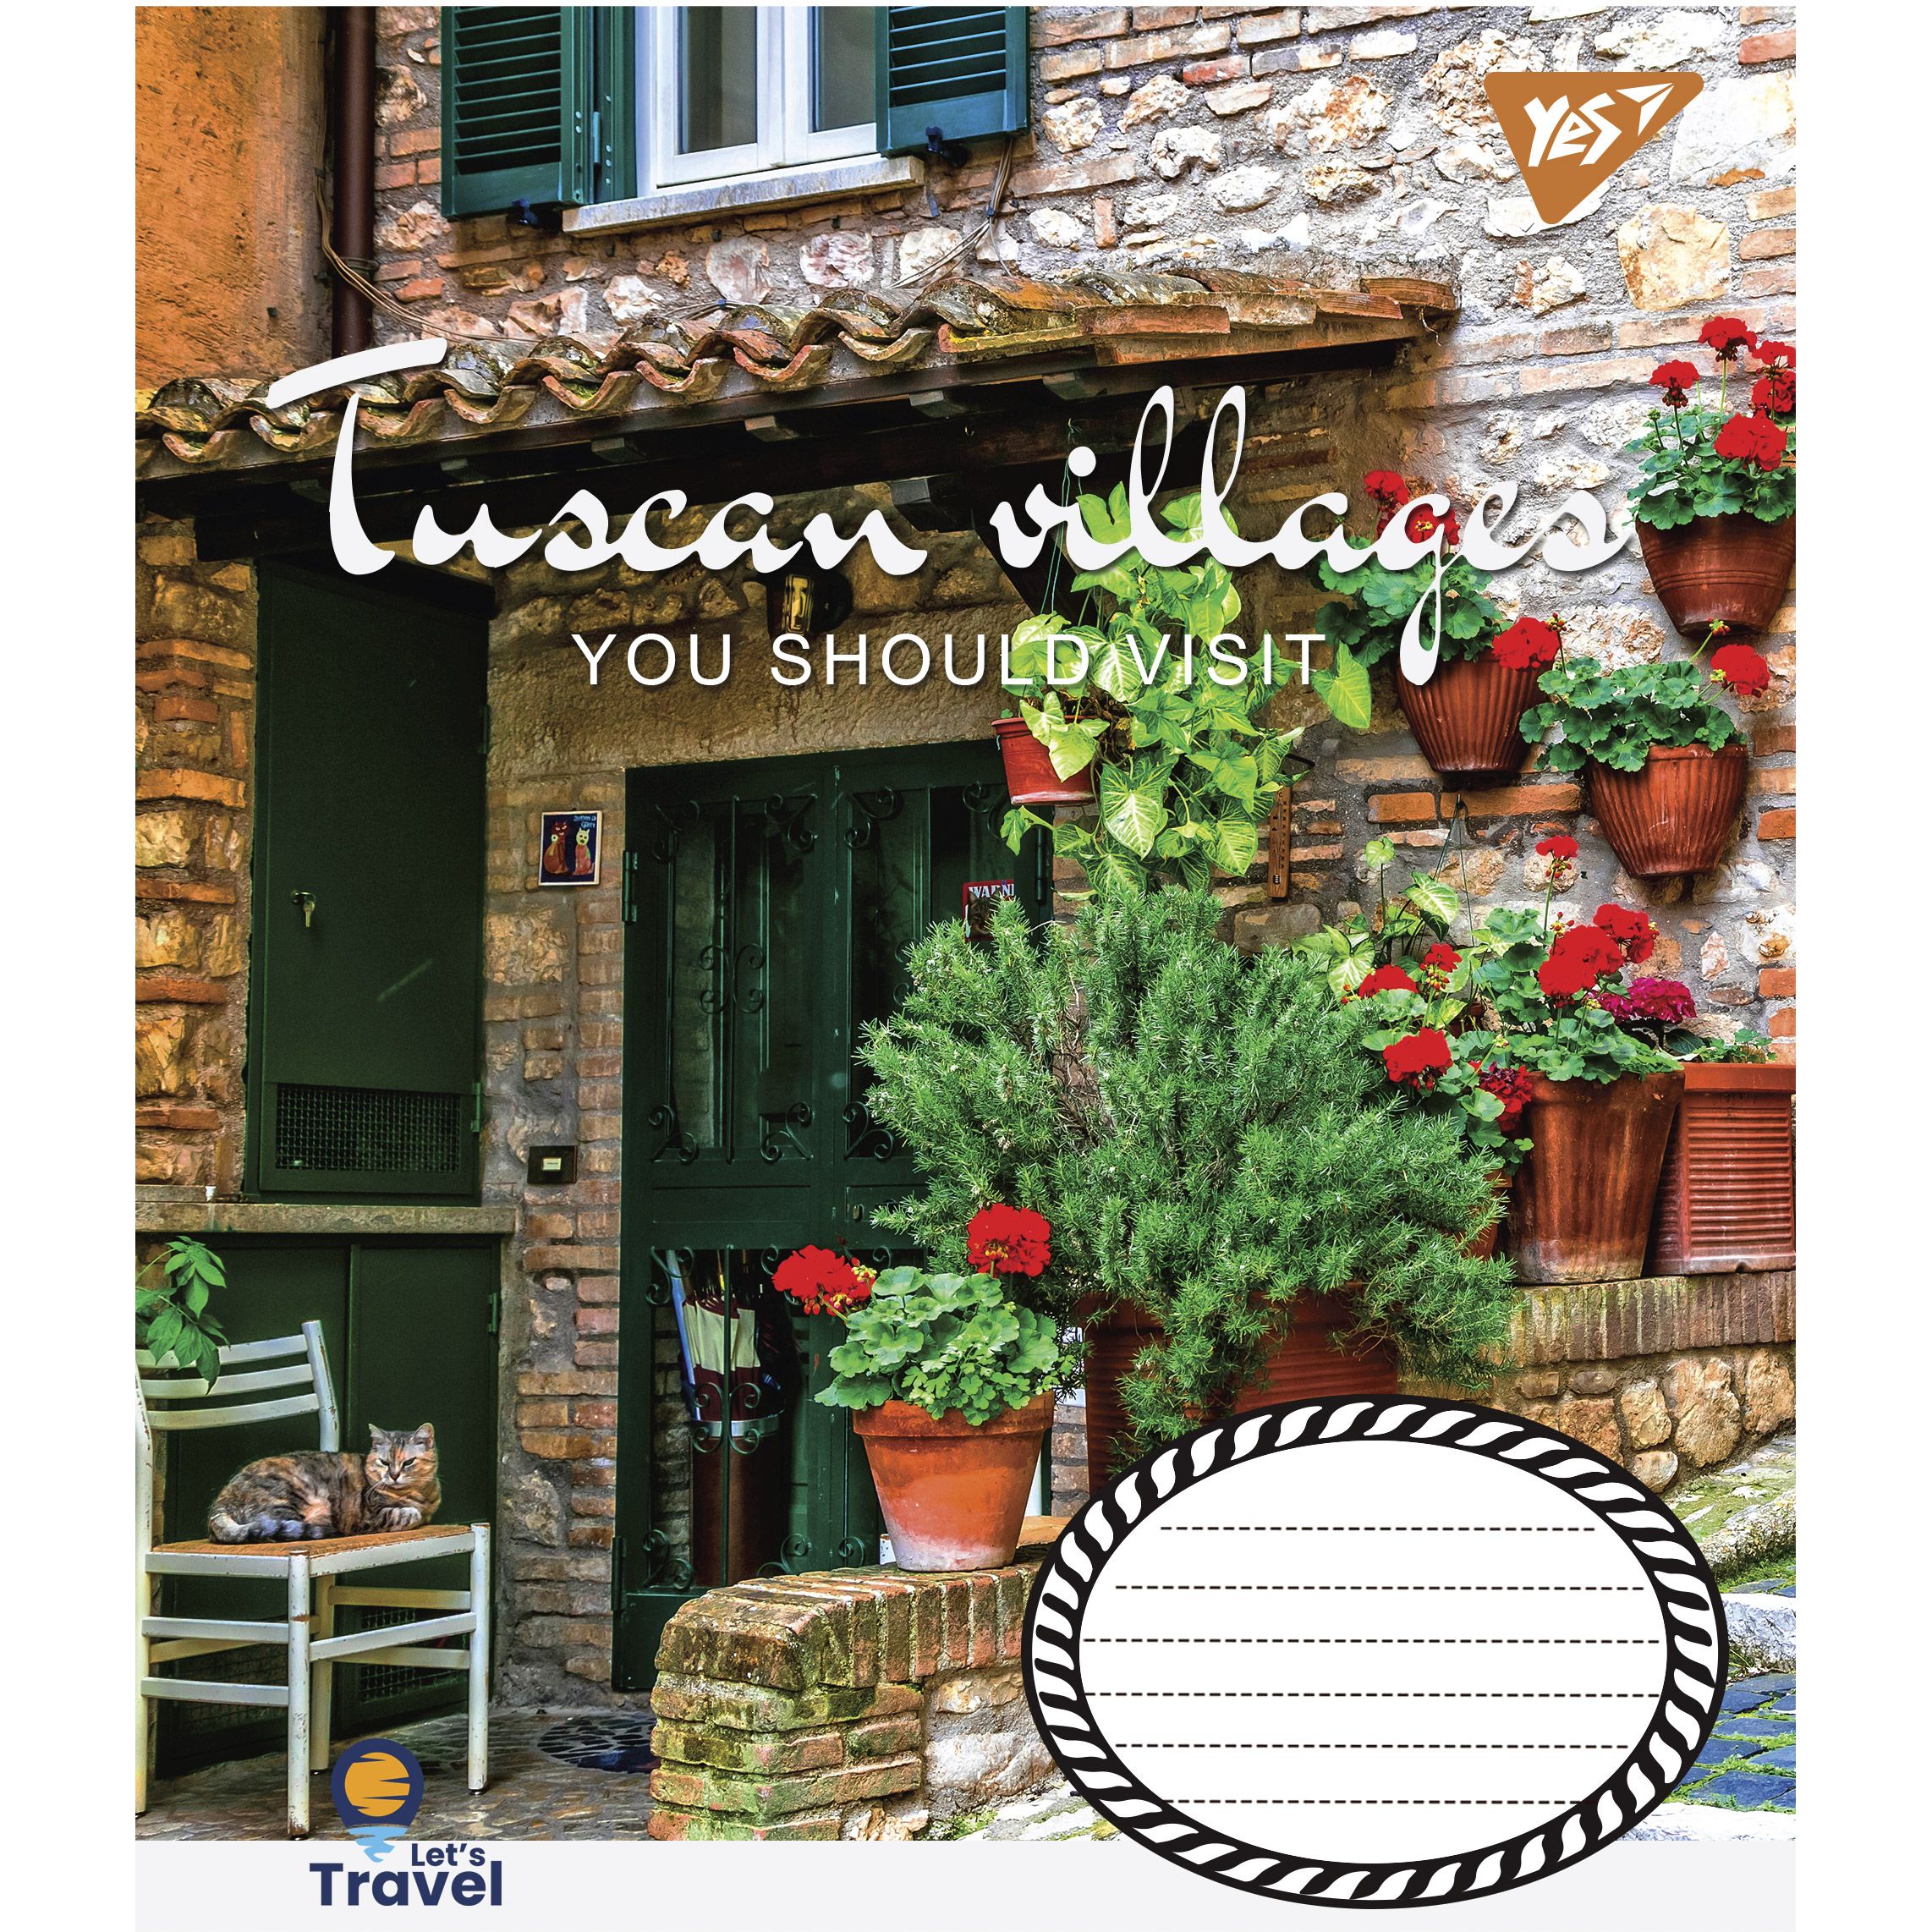 Тетрадь общая Yes Tuscan Villages, A5, в клеточку, 48 листов - фото 2